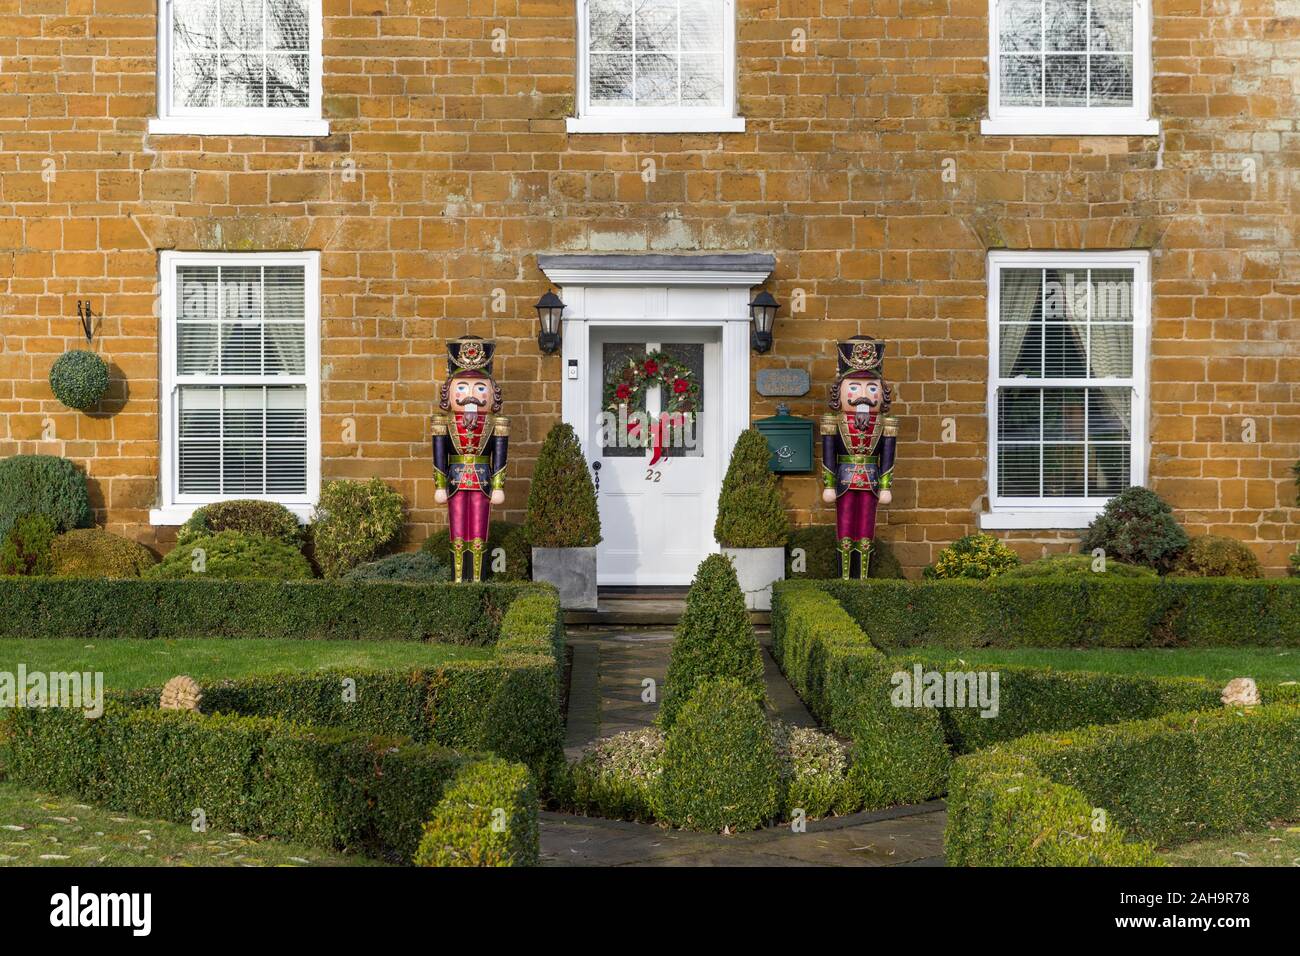 Façade d'une propriété d'époque à Noël avec deux personnages de Nutcracker de taille réelle près de la porte d'entrée; Milton Malsor, Northamptonshire, Royaume-Uni Banque D'Images